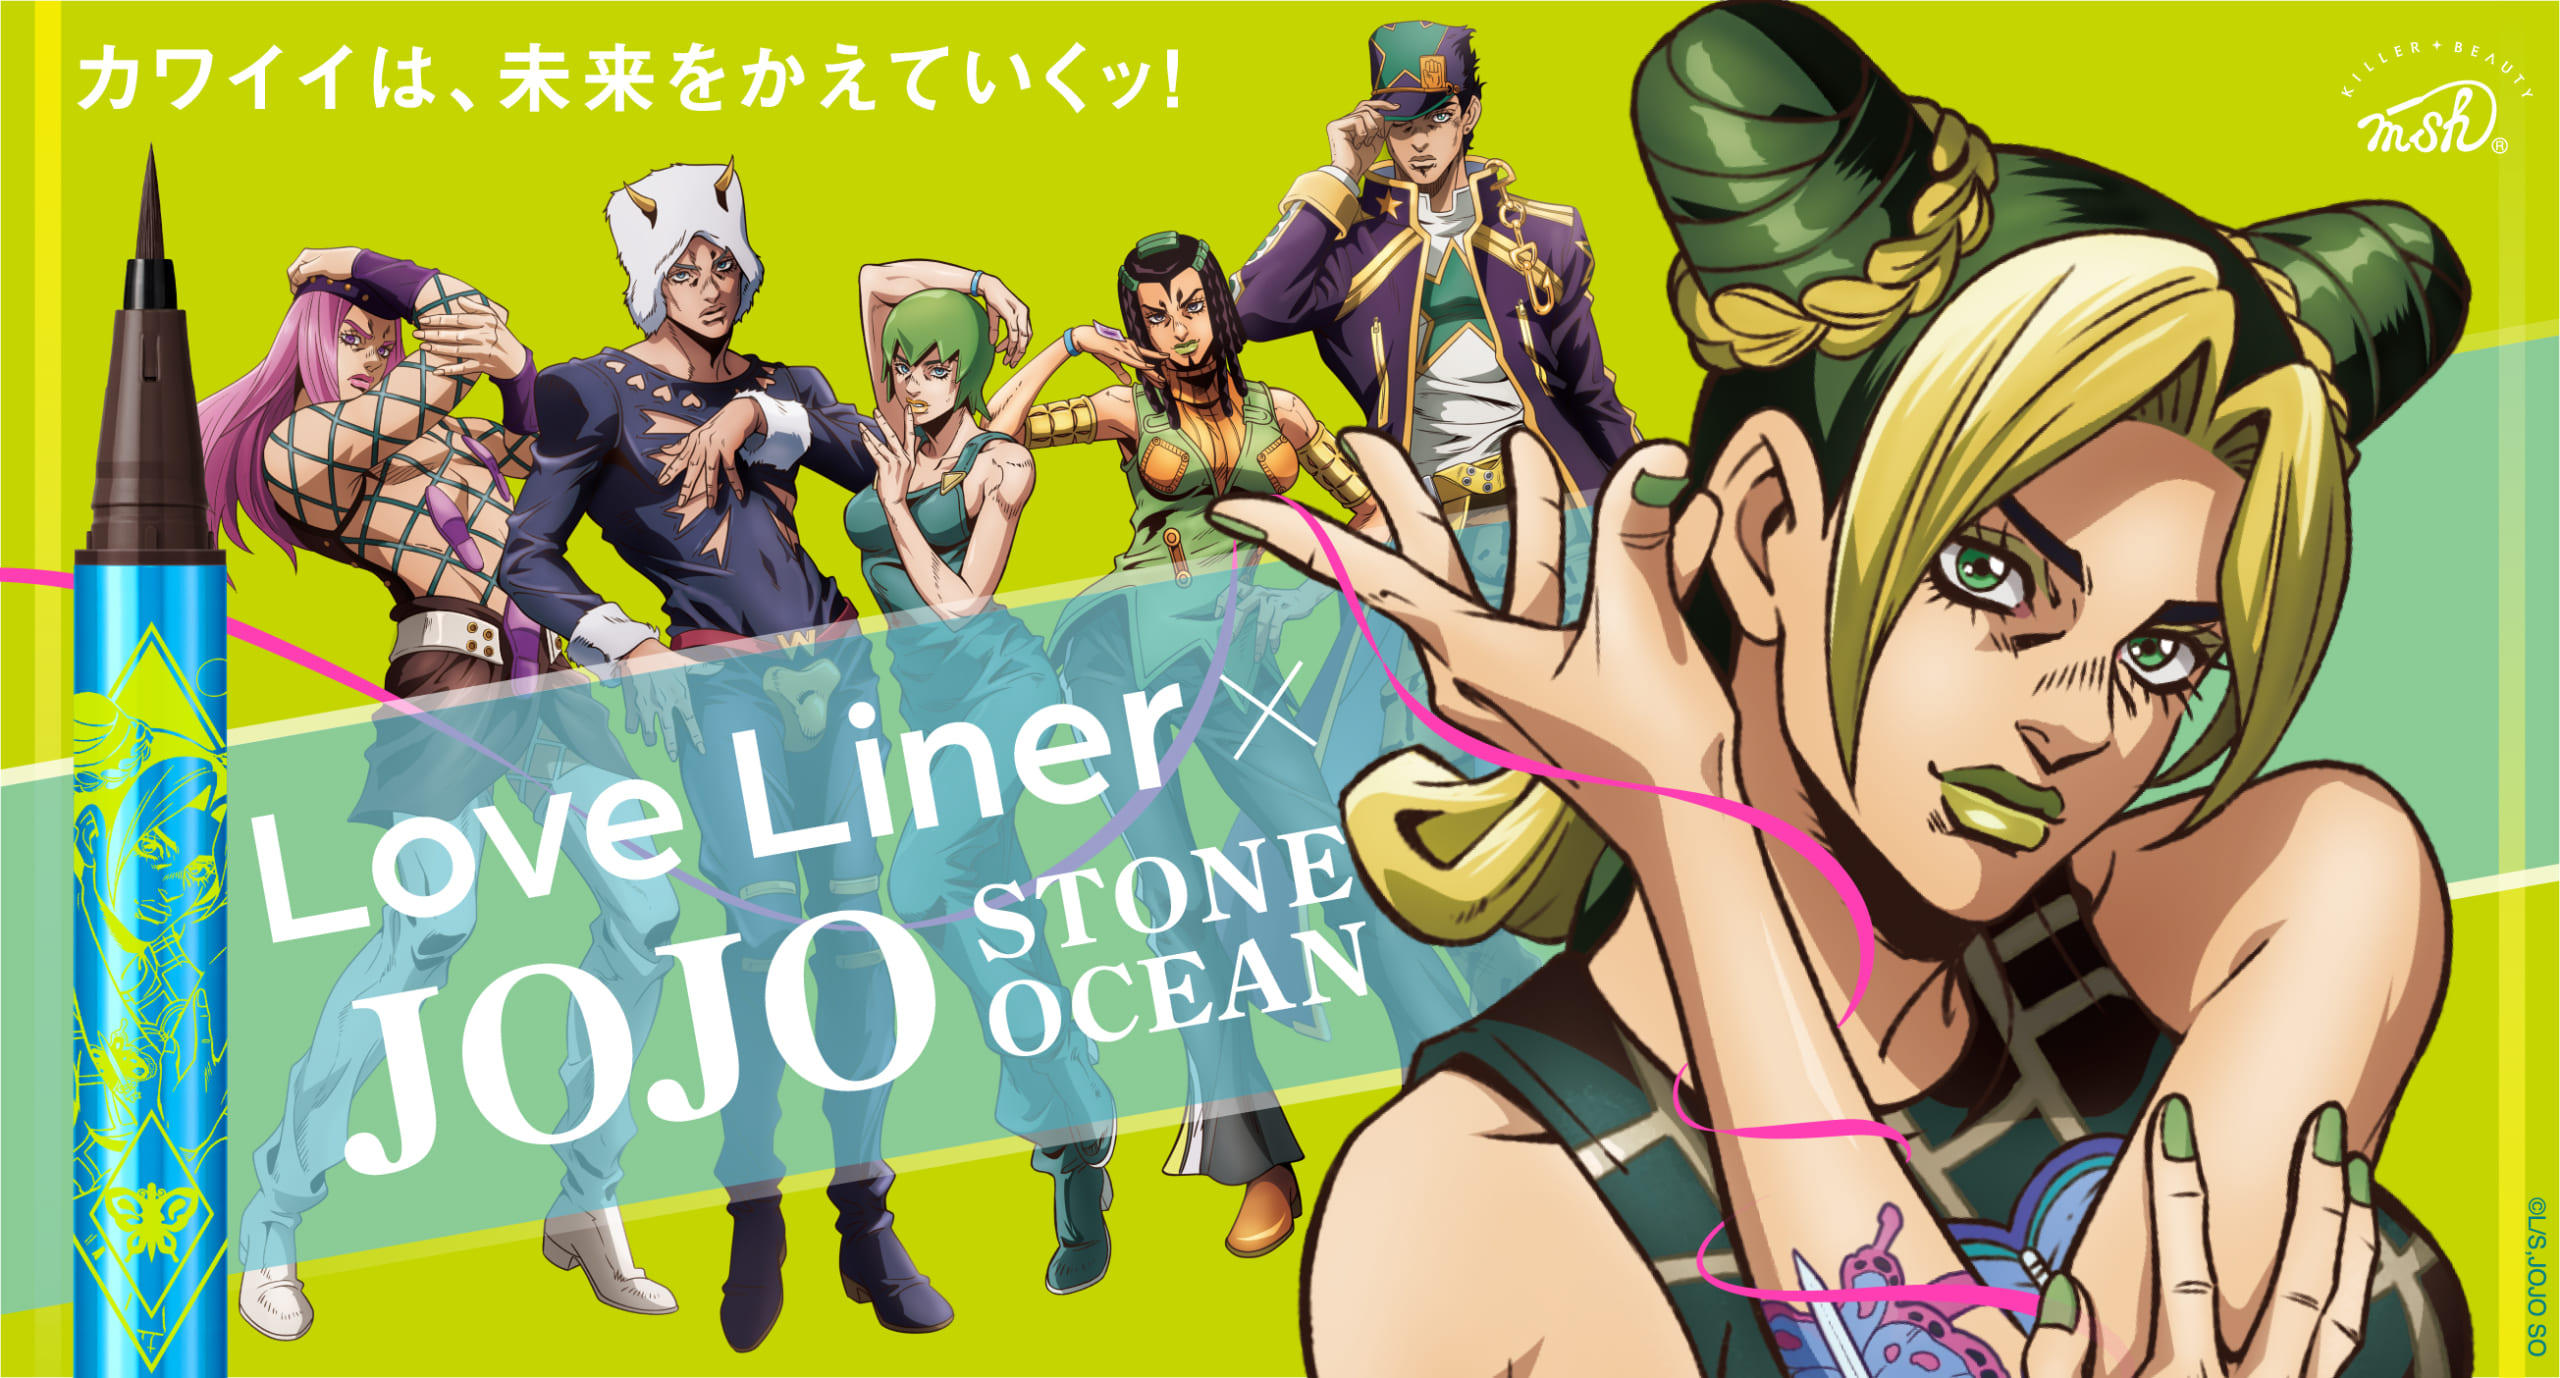 Love Liner x JoJo Stone Ocean